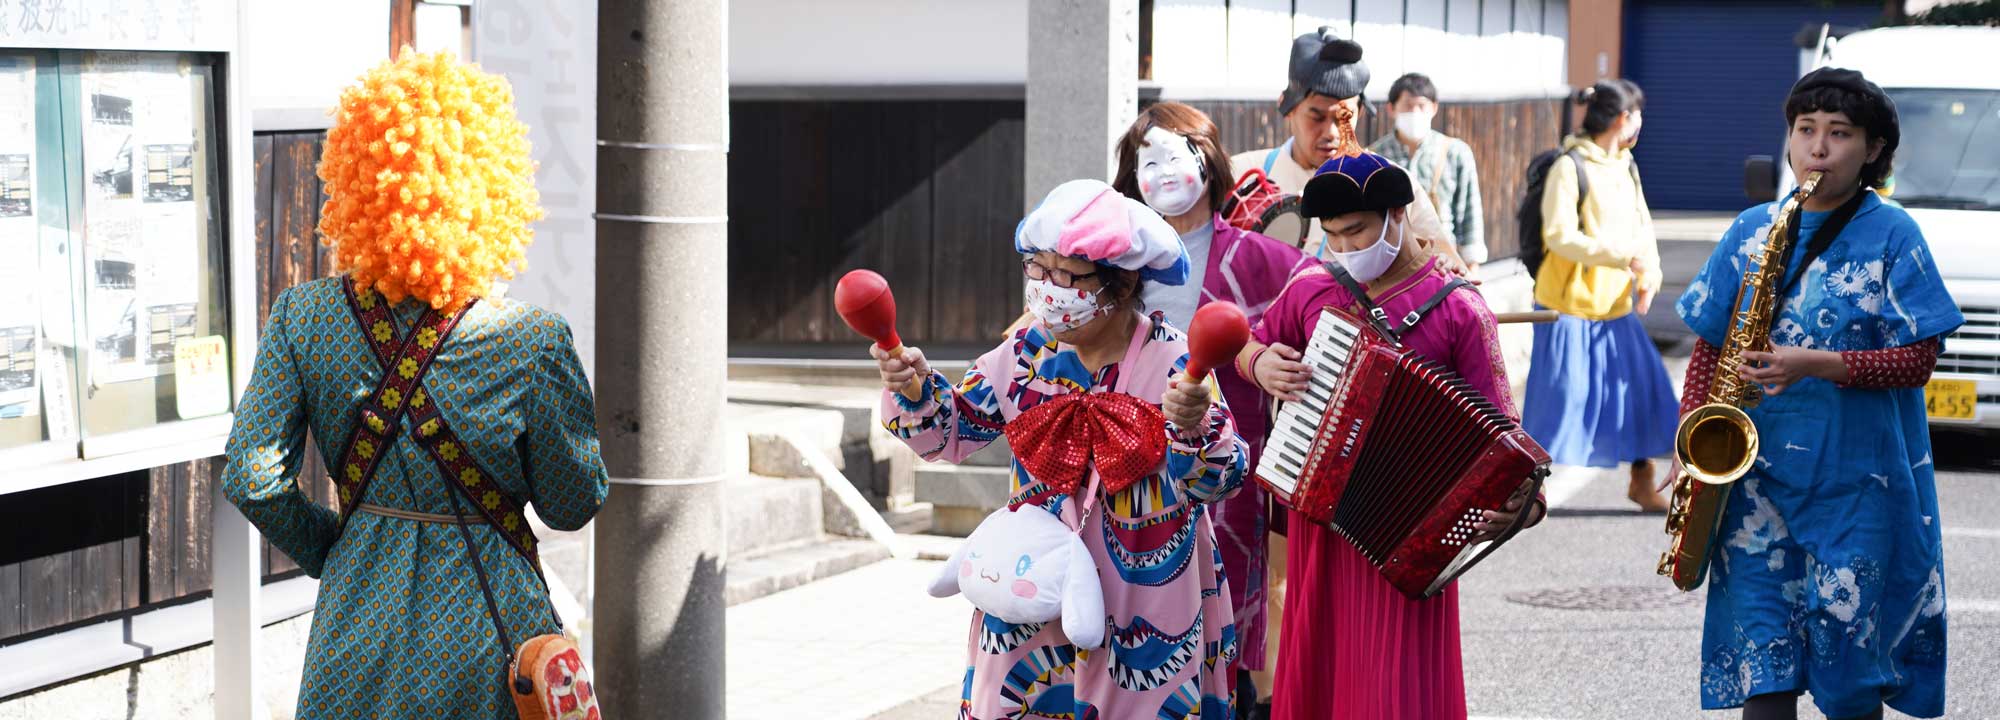 まちなかをアフロのカツラや帽子をかぶった派手な衣装の人たちが楽器を持って練り歩いている写真